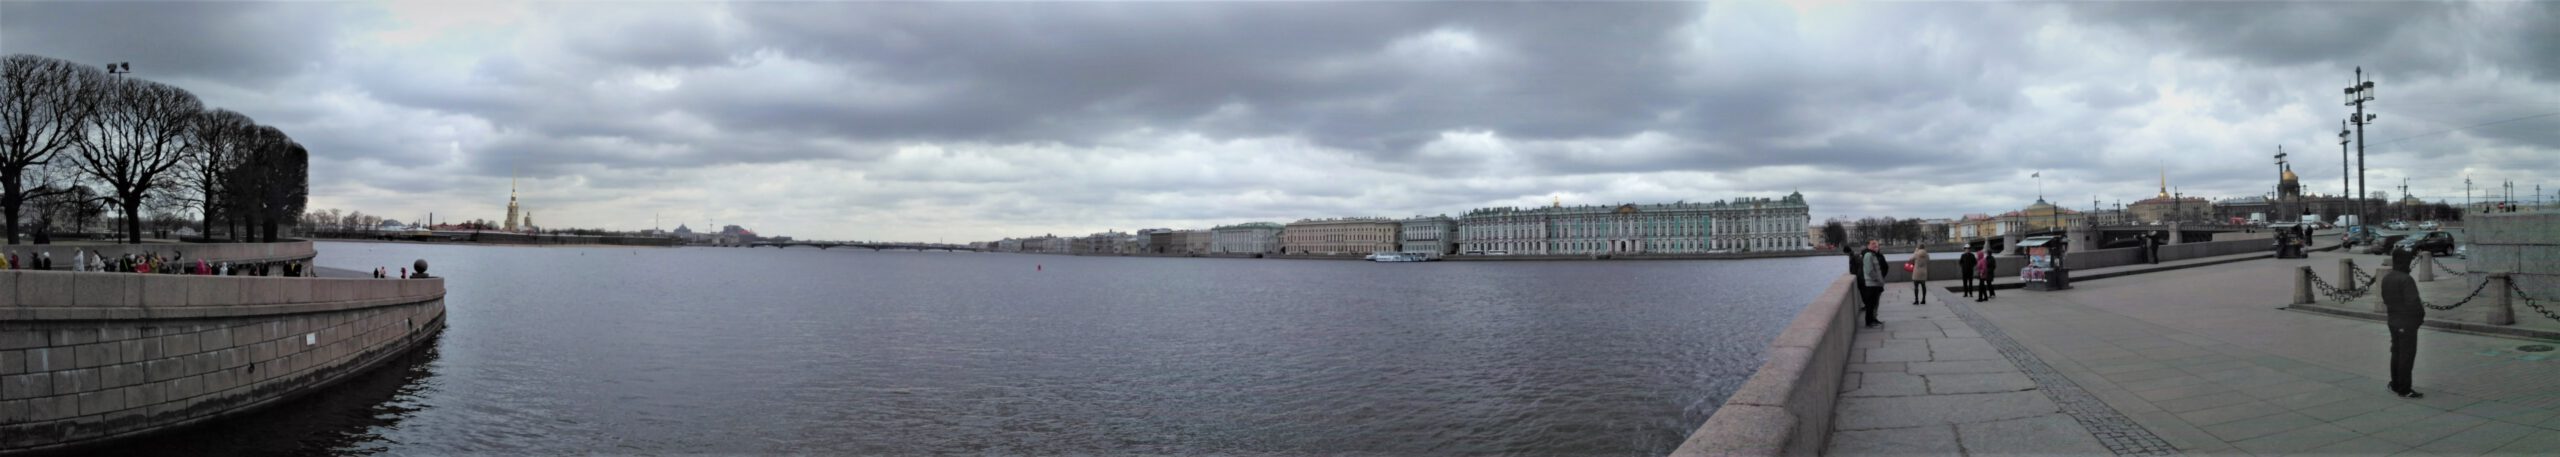 Panorama auf der Strelka mit Newa Eremitage und Peter und Paul Kathedrale im Hintergrund. 